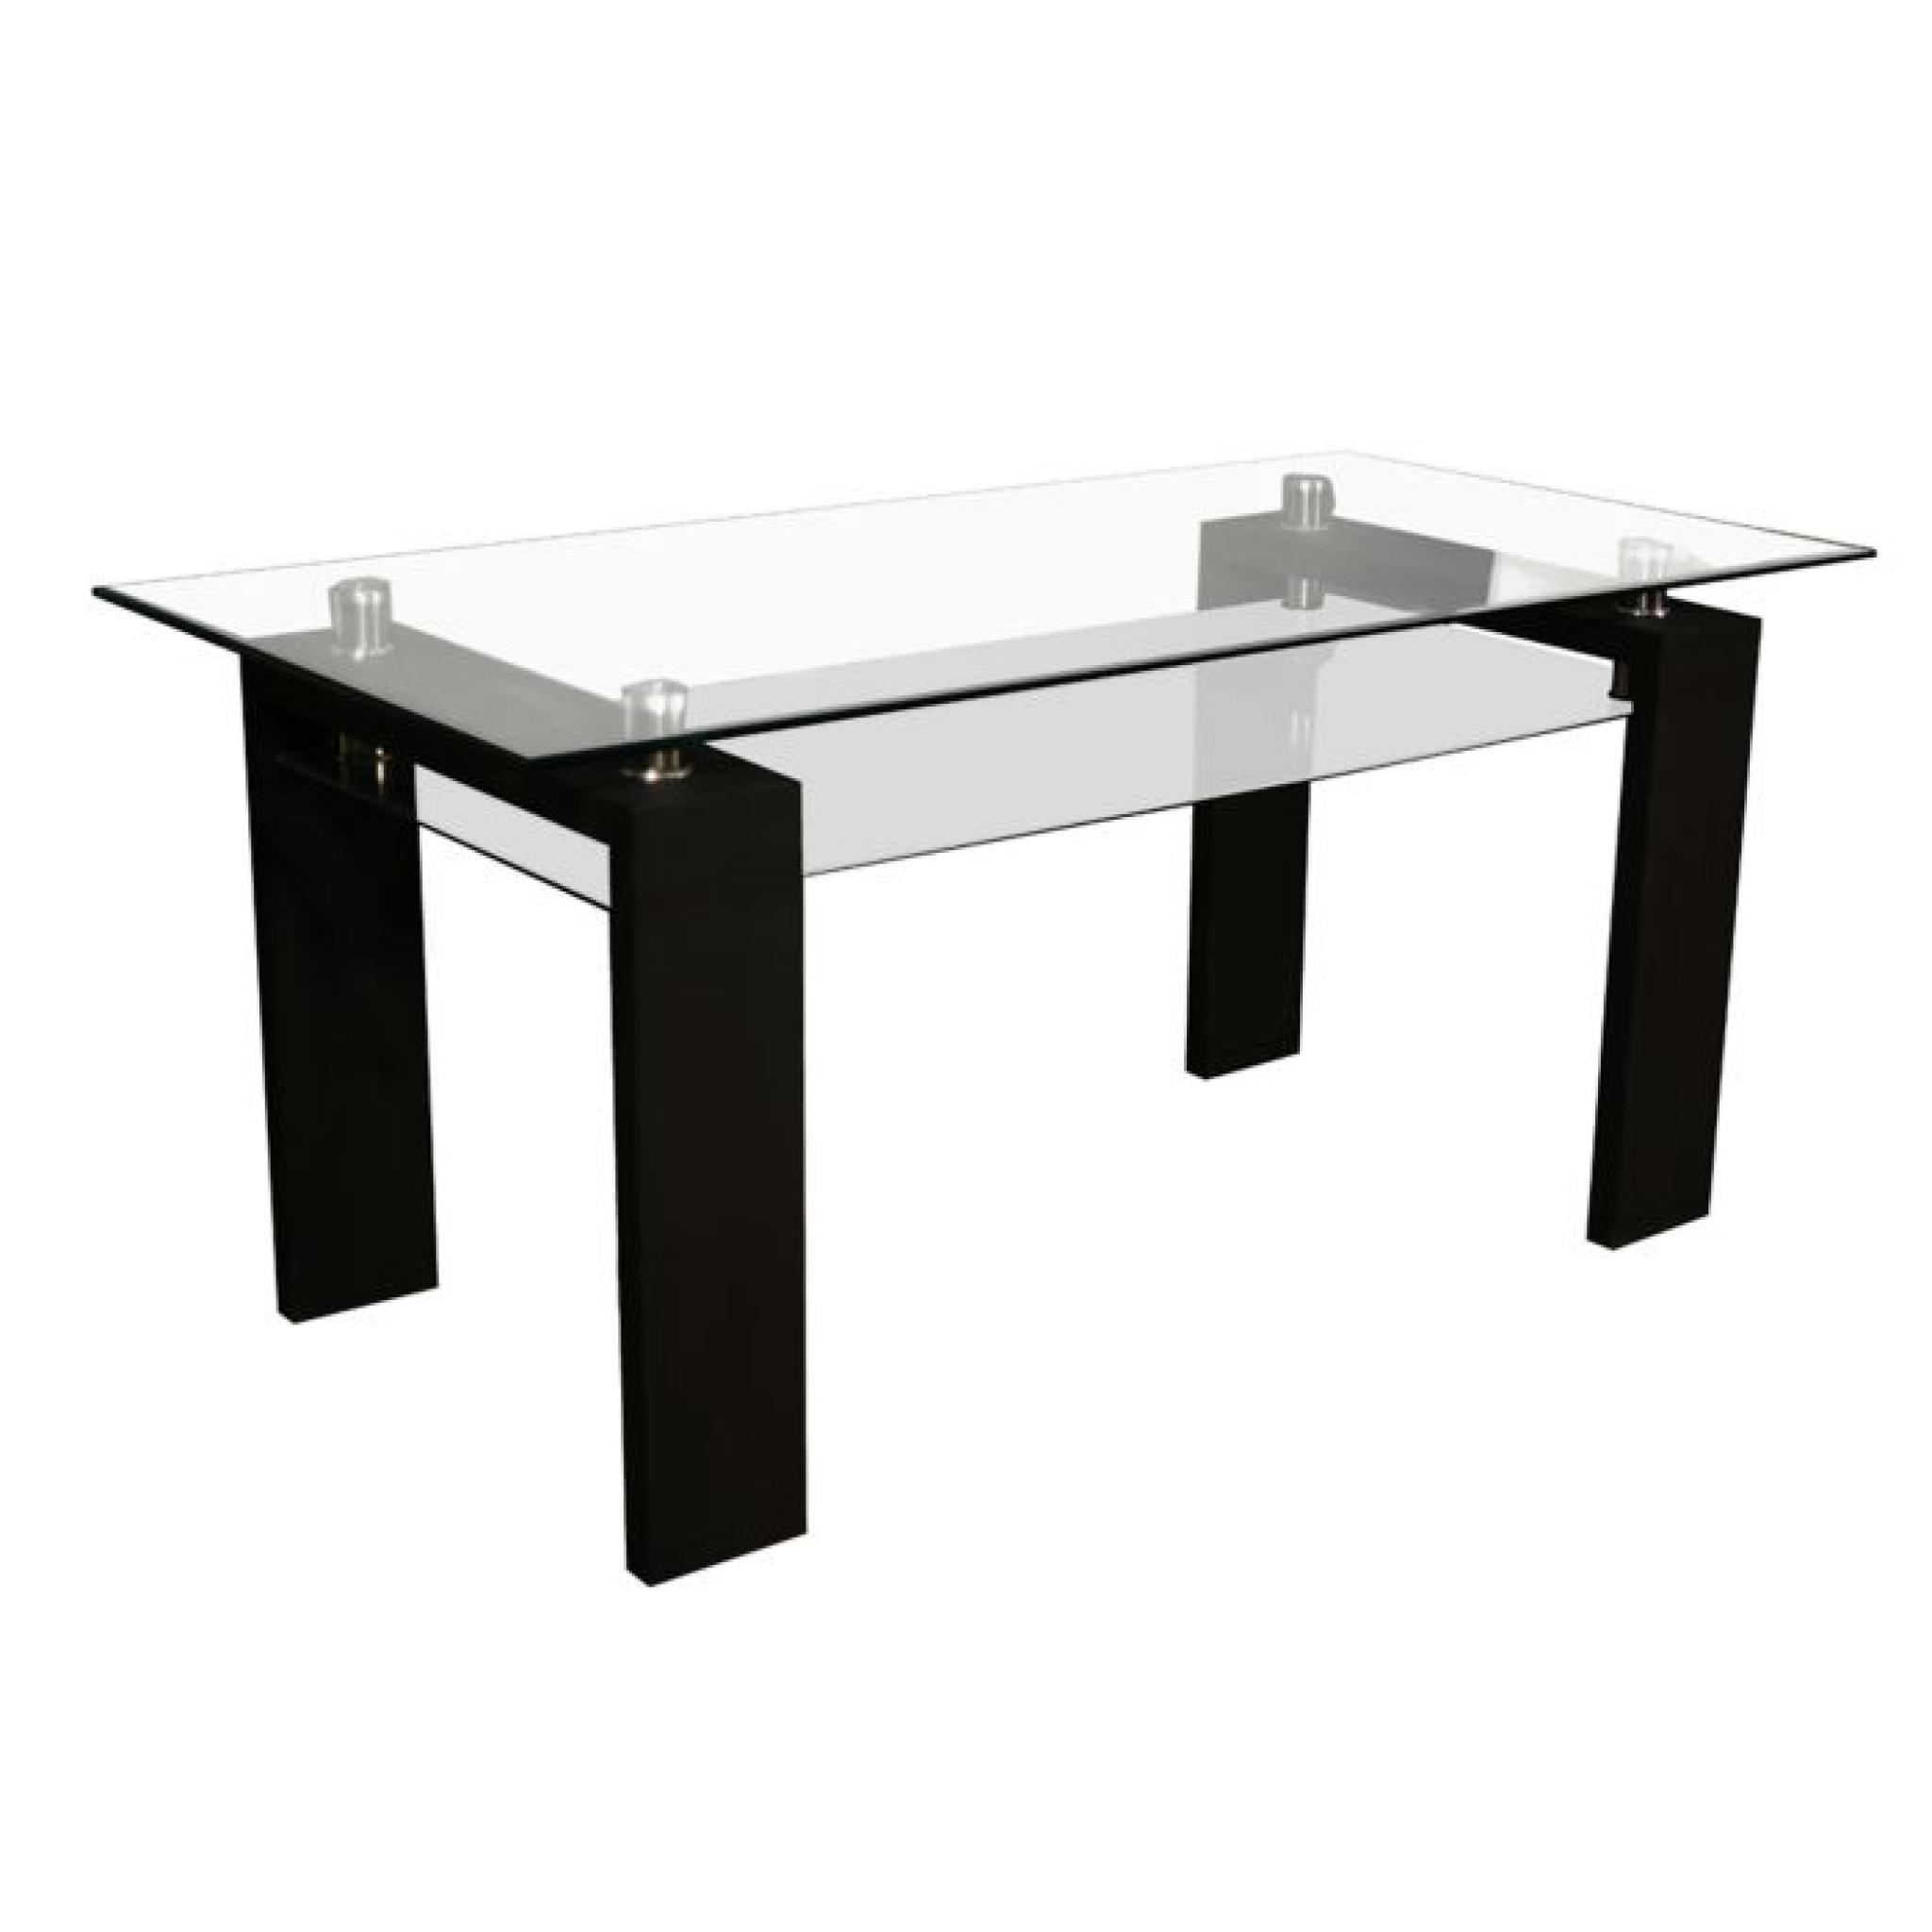 Table Rectangulaire Moderne Laqué Noir Gloria